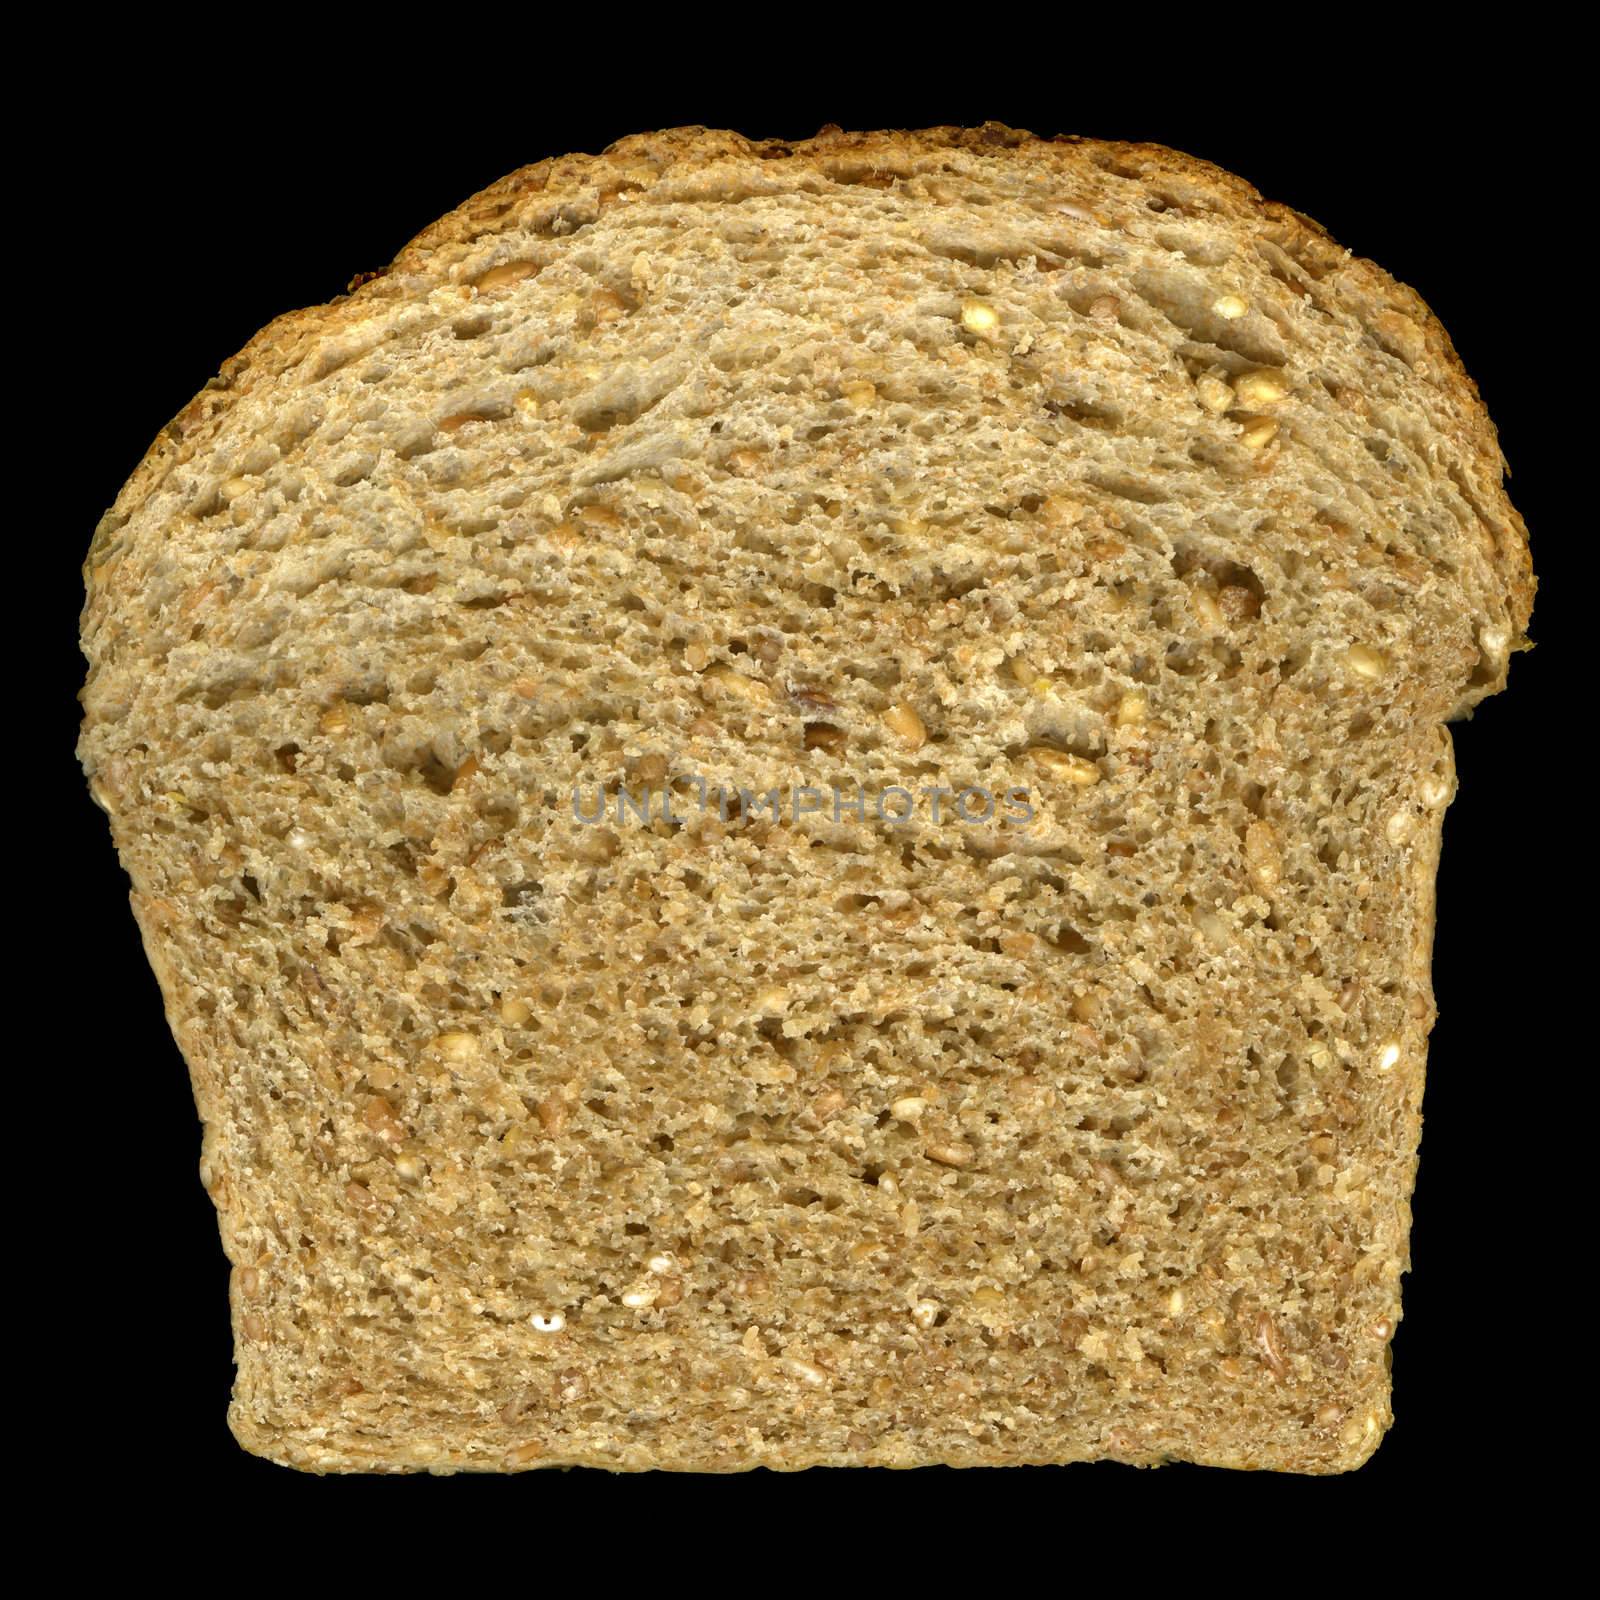 slice of nine grain bread by PixelsAway